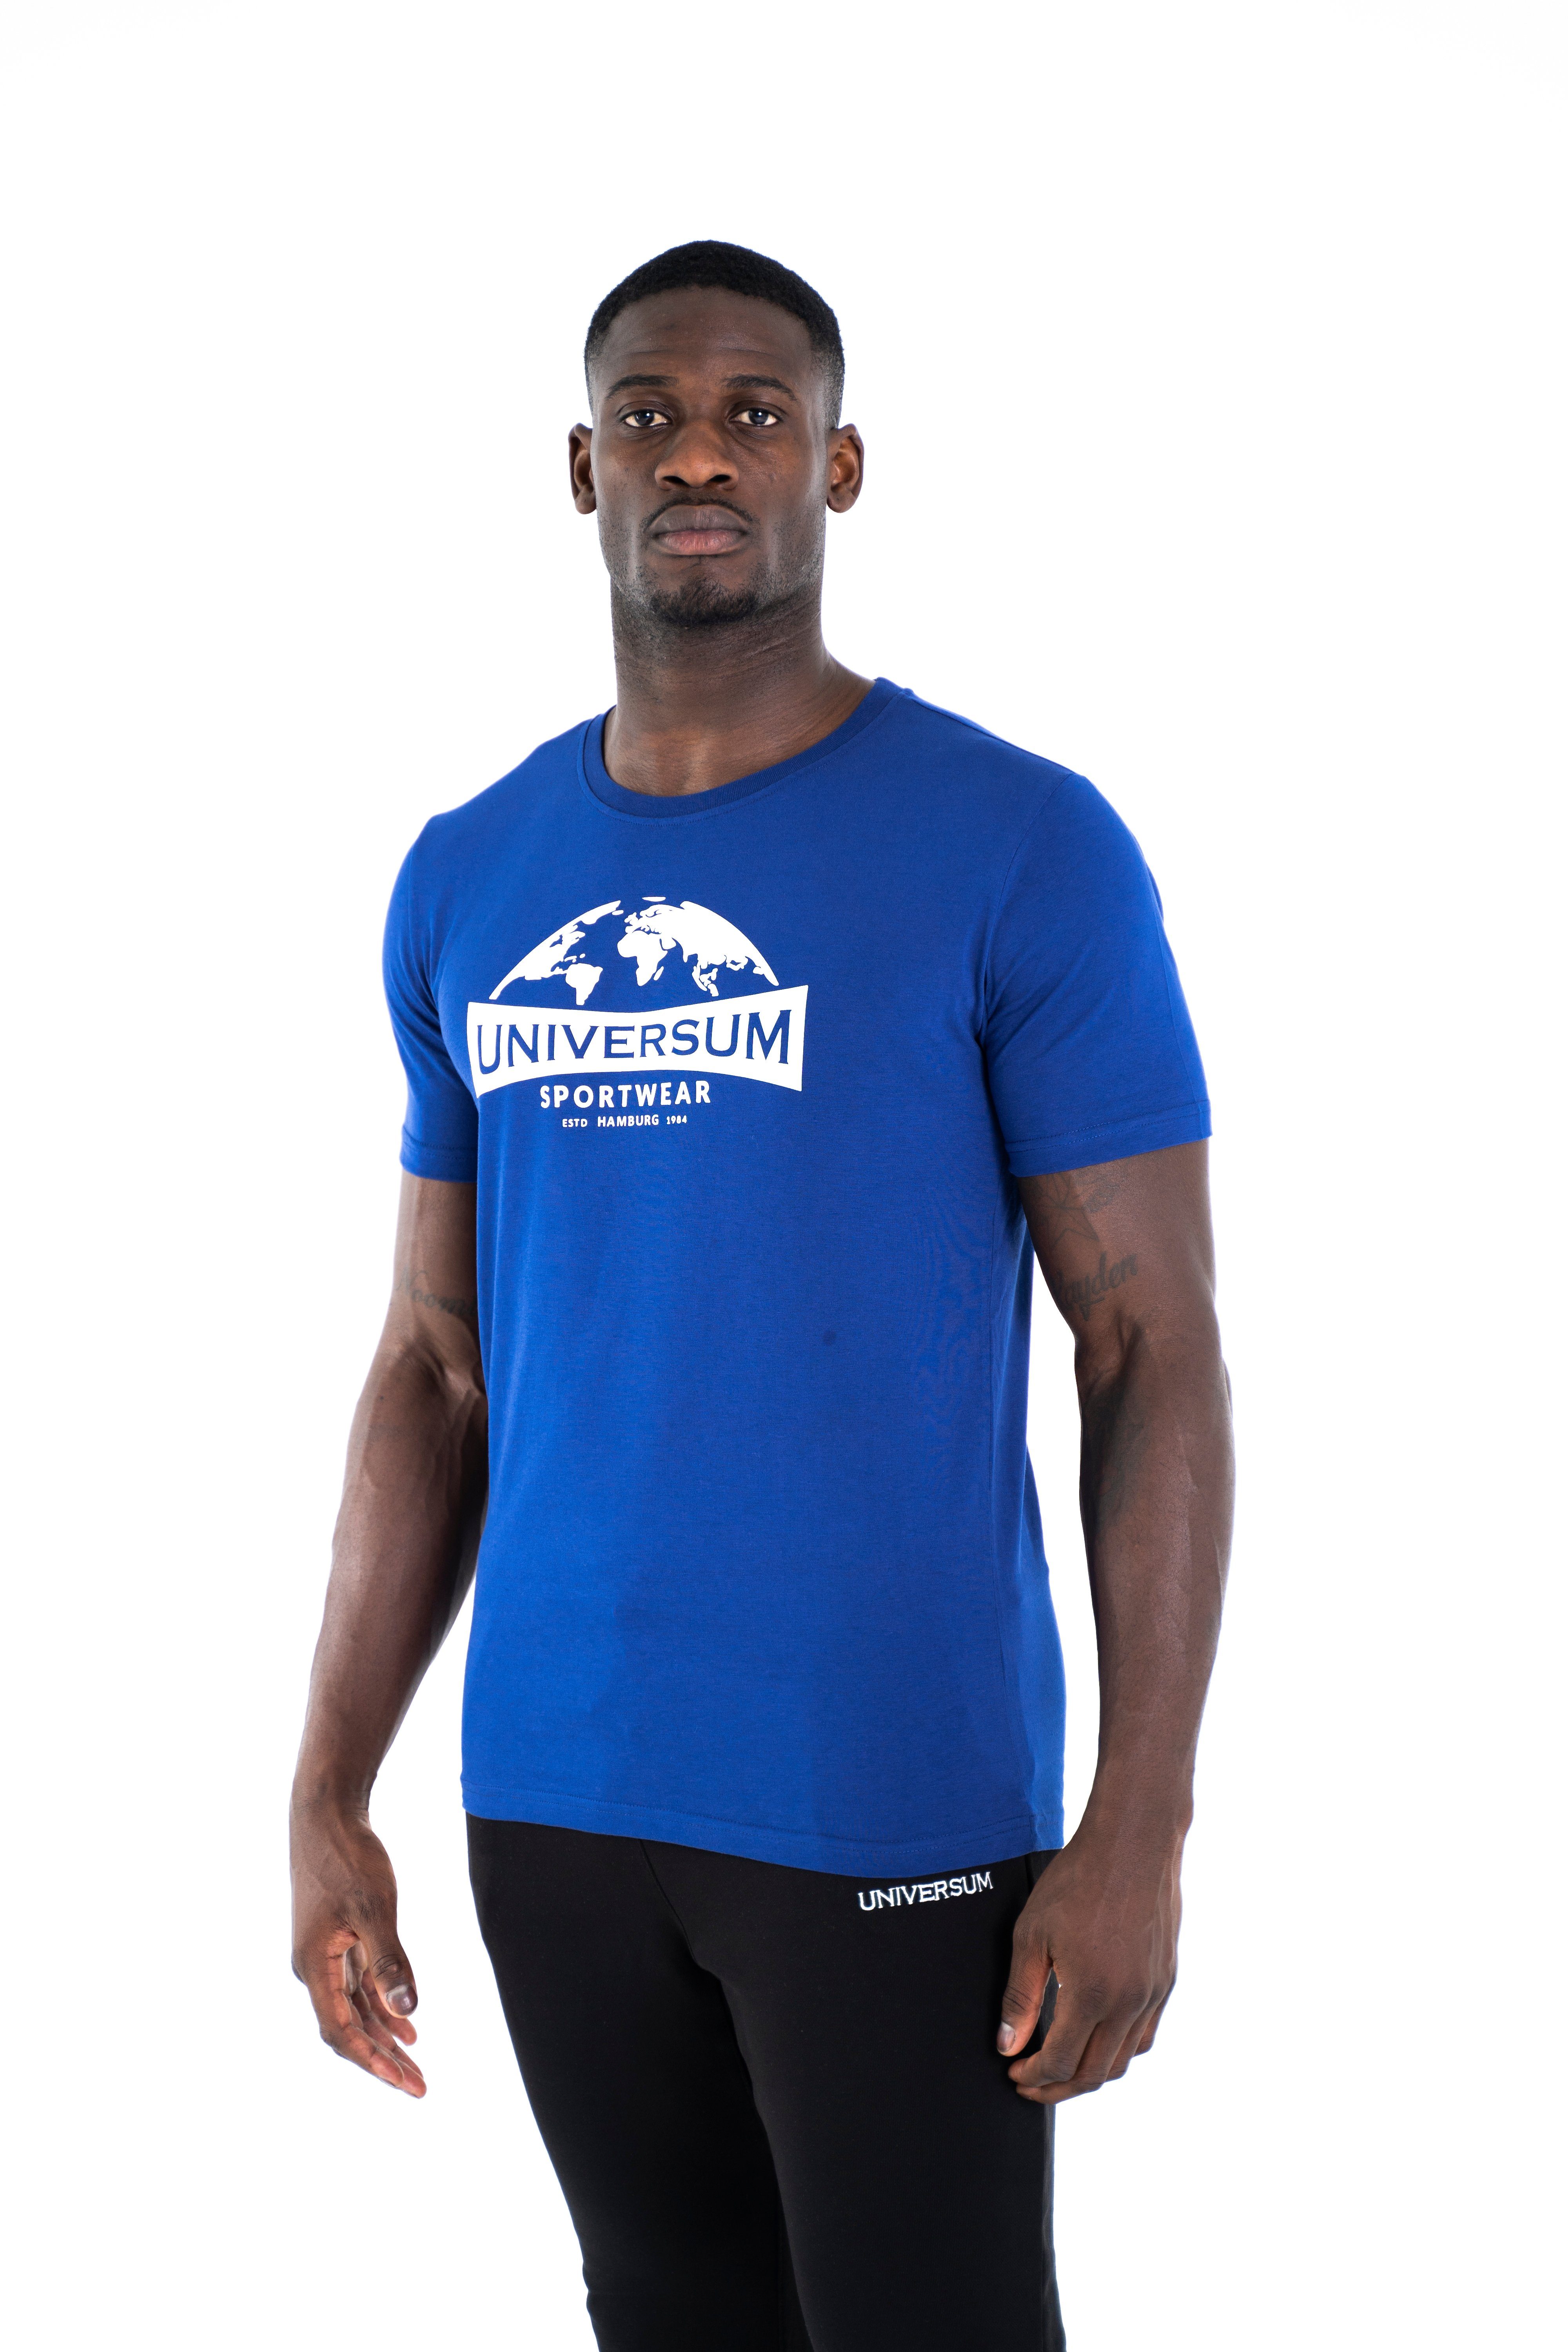 T-Shirt Modern C-Neck Cotton Rundhalsausschnitt, 100% Baumwoll Shirt Universum Sportwear blau